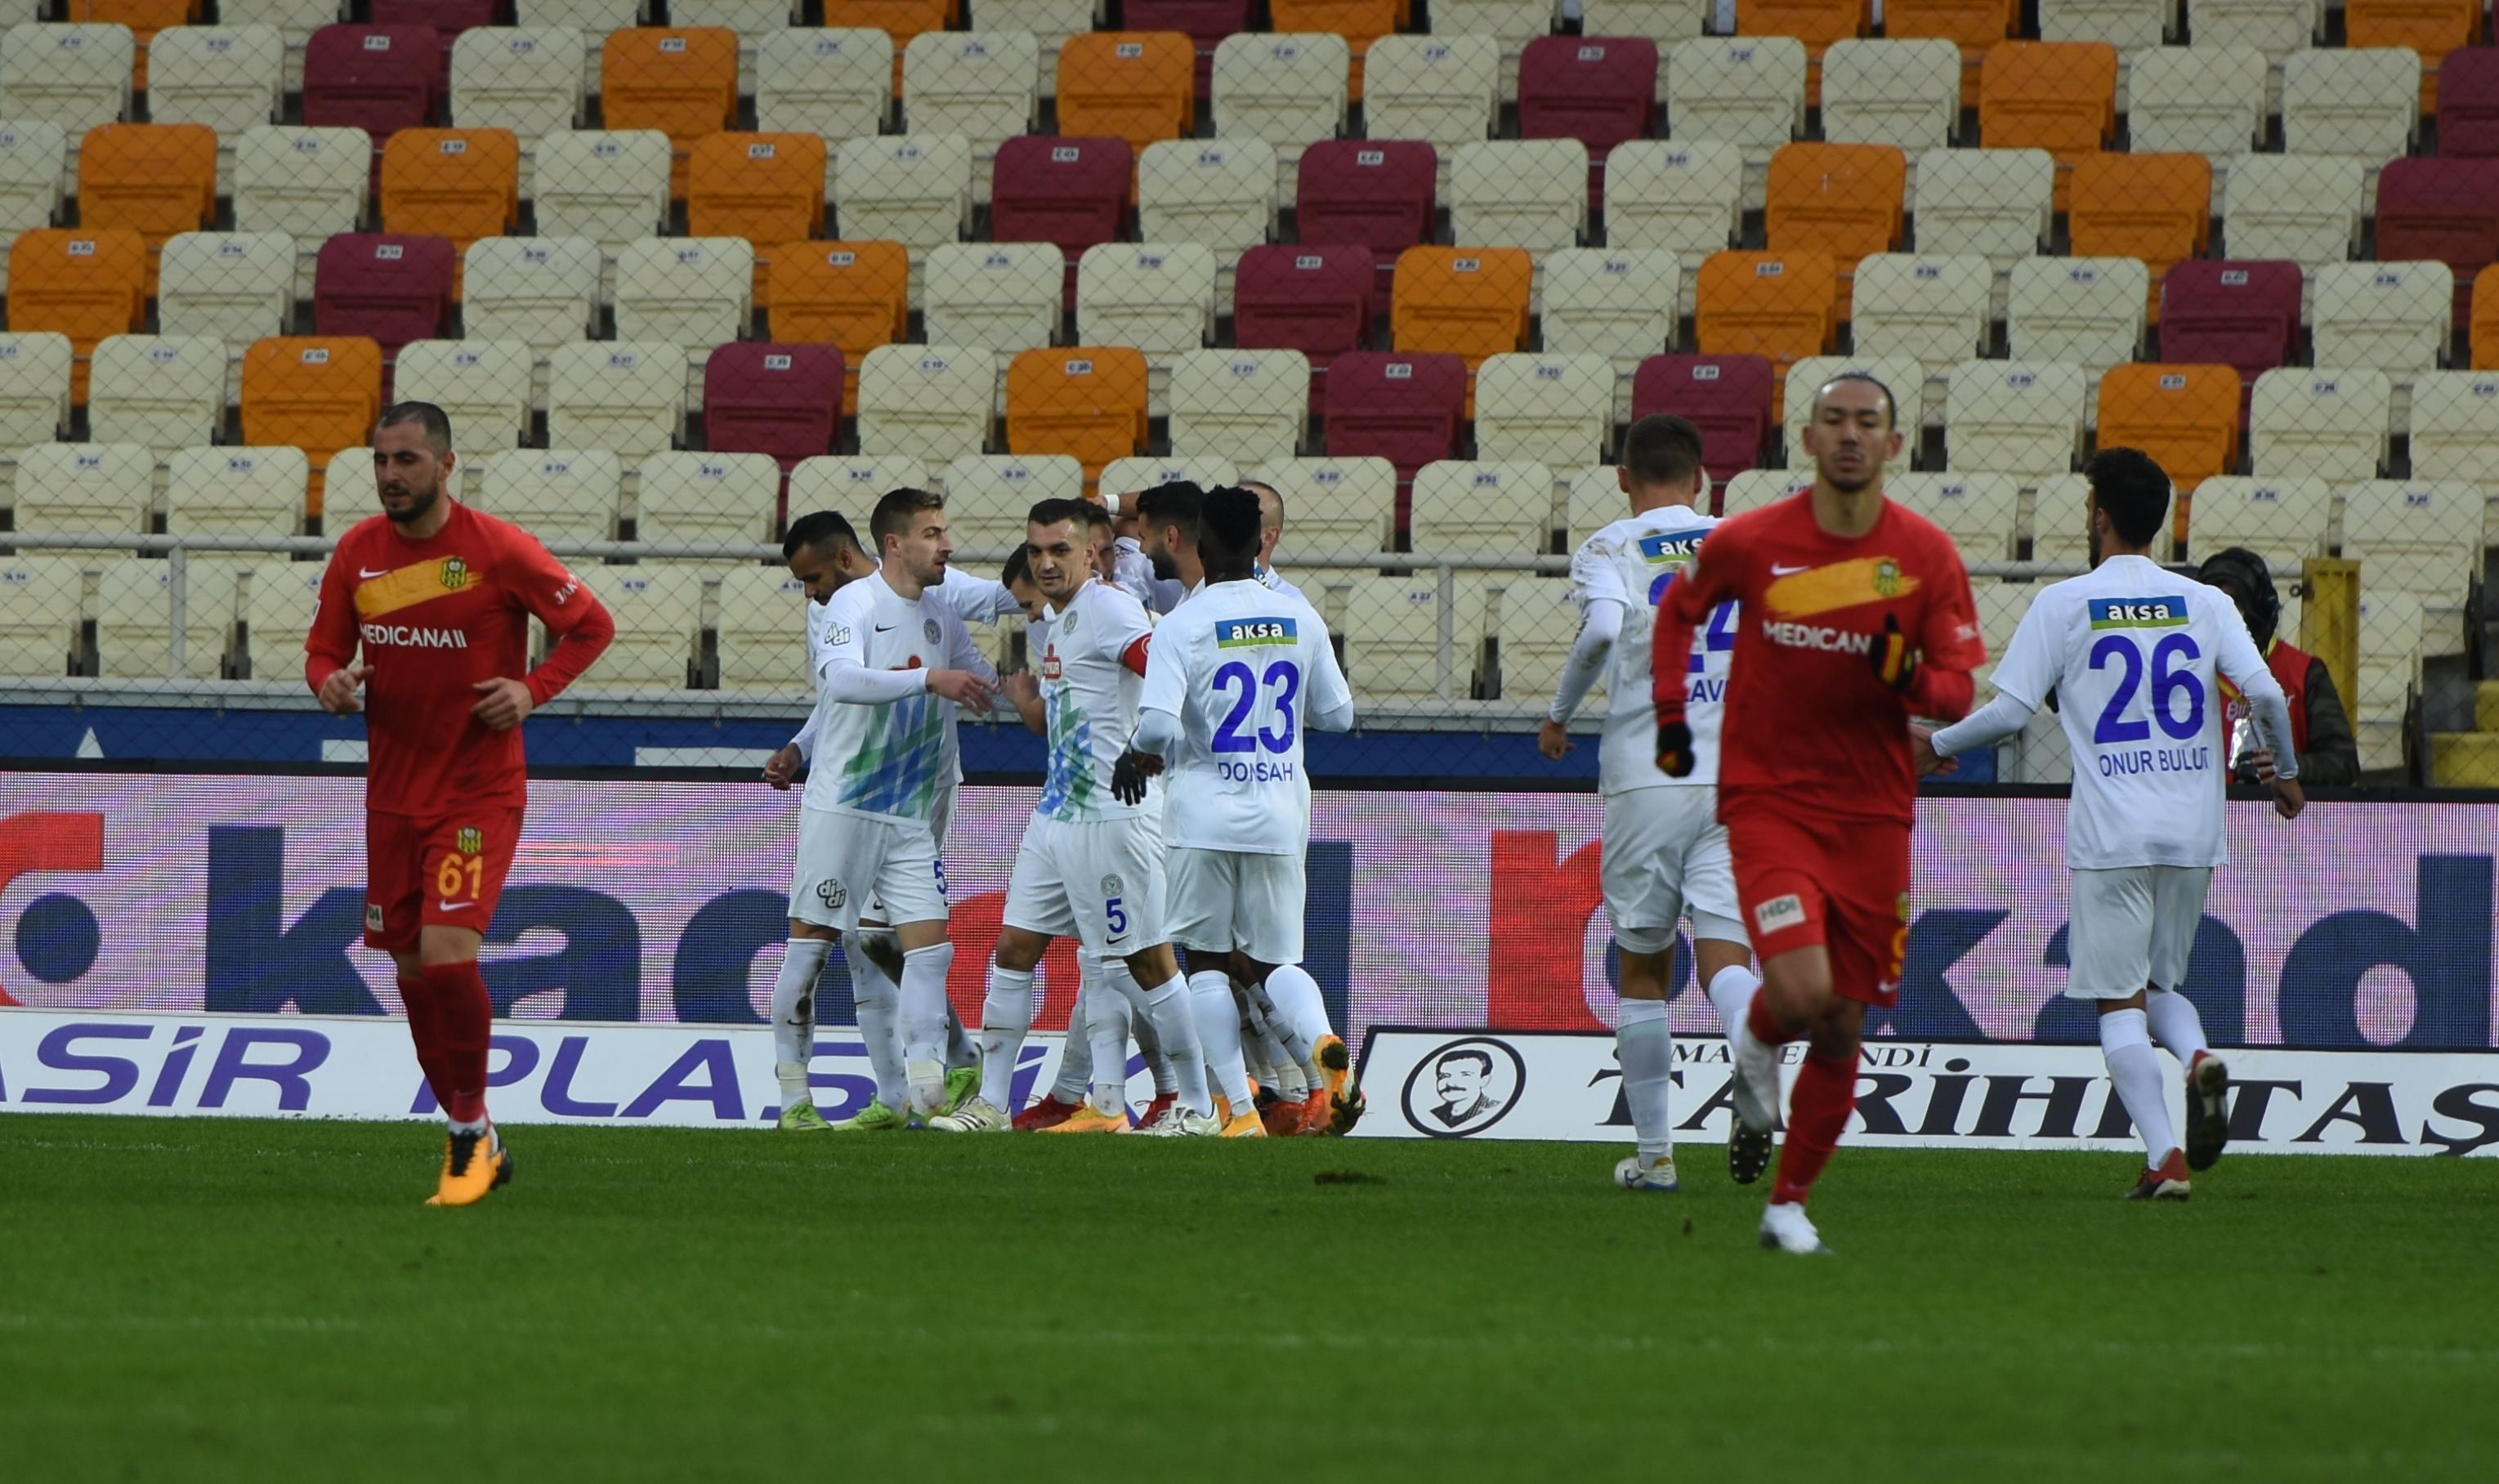 ÖZET | Yeni Malatyaspor - Çaykur Rizespor maç sonucu: 4-1